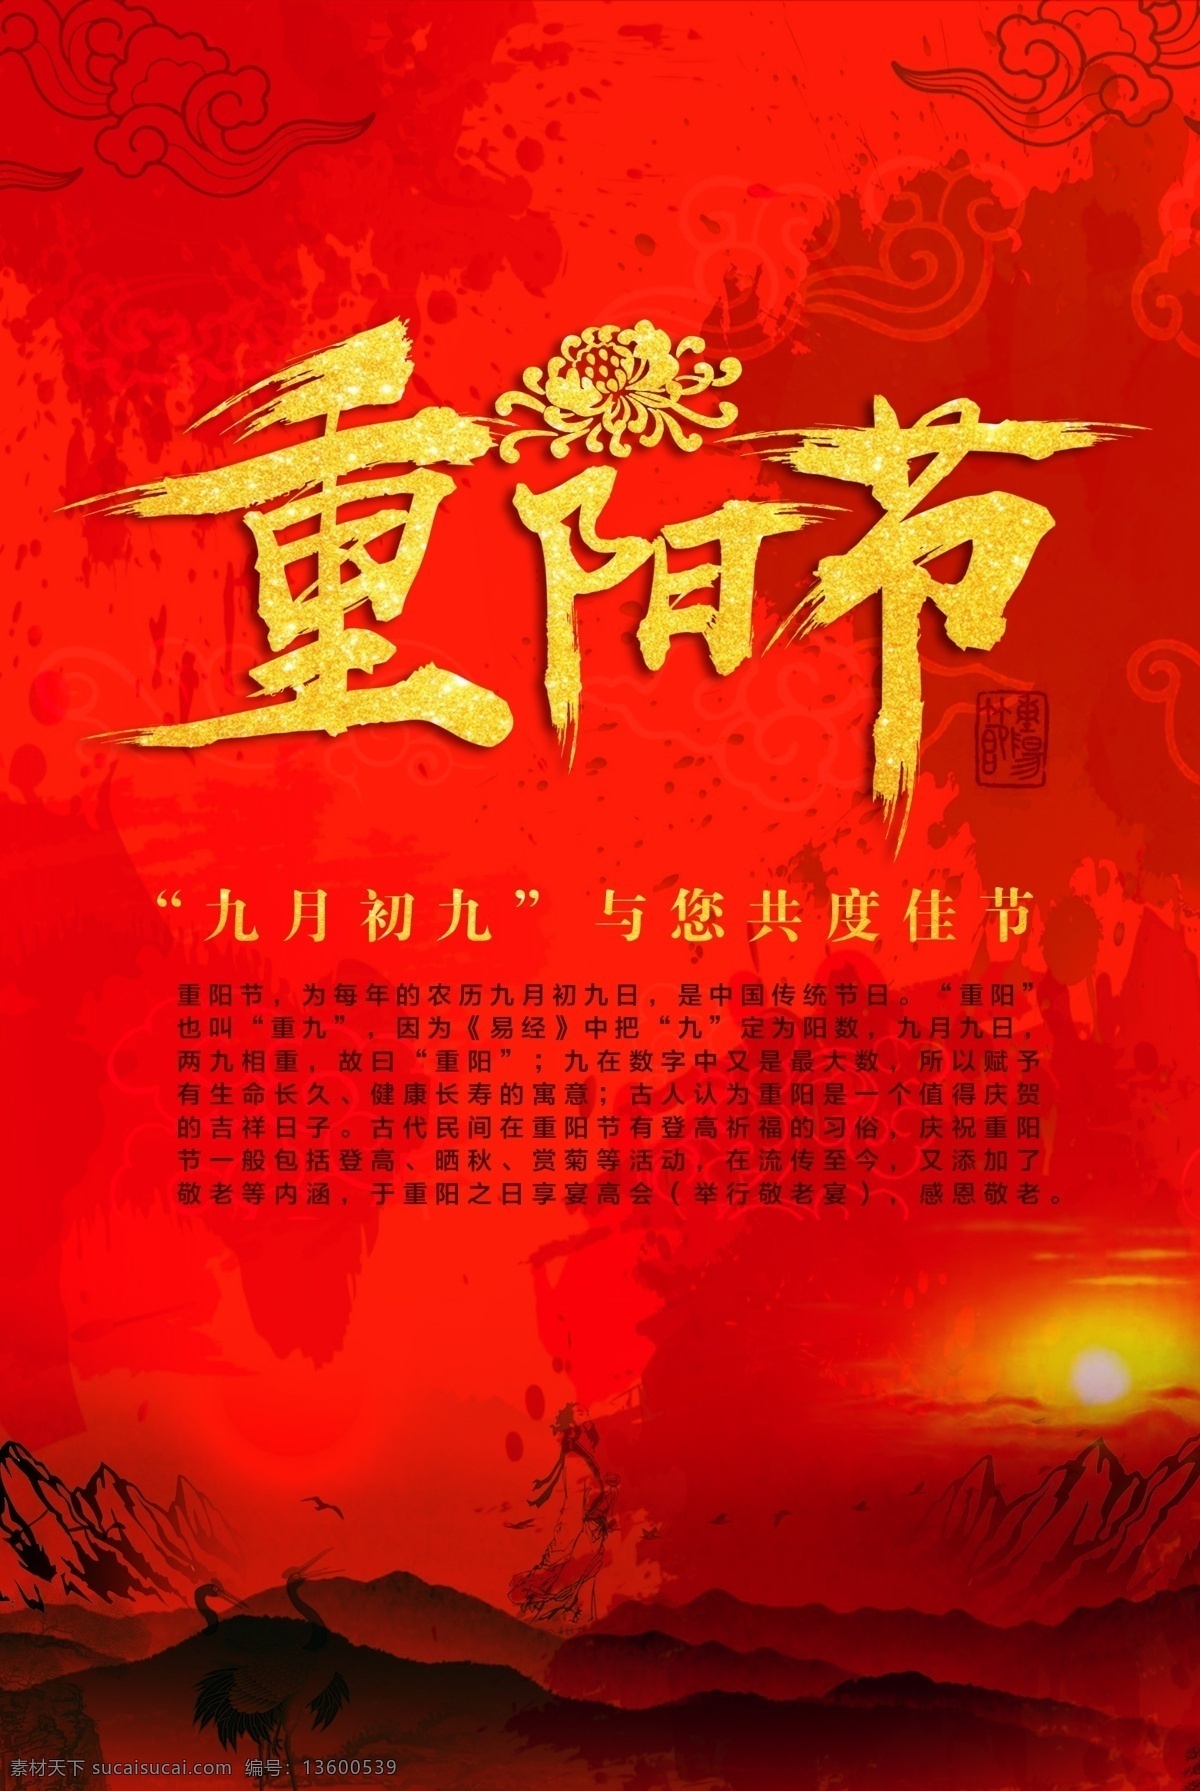 重阳 节日 喜庆 海报 红黑风格 传统 中国风